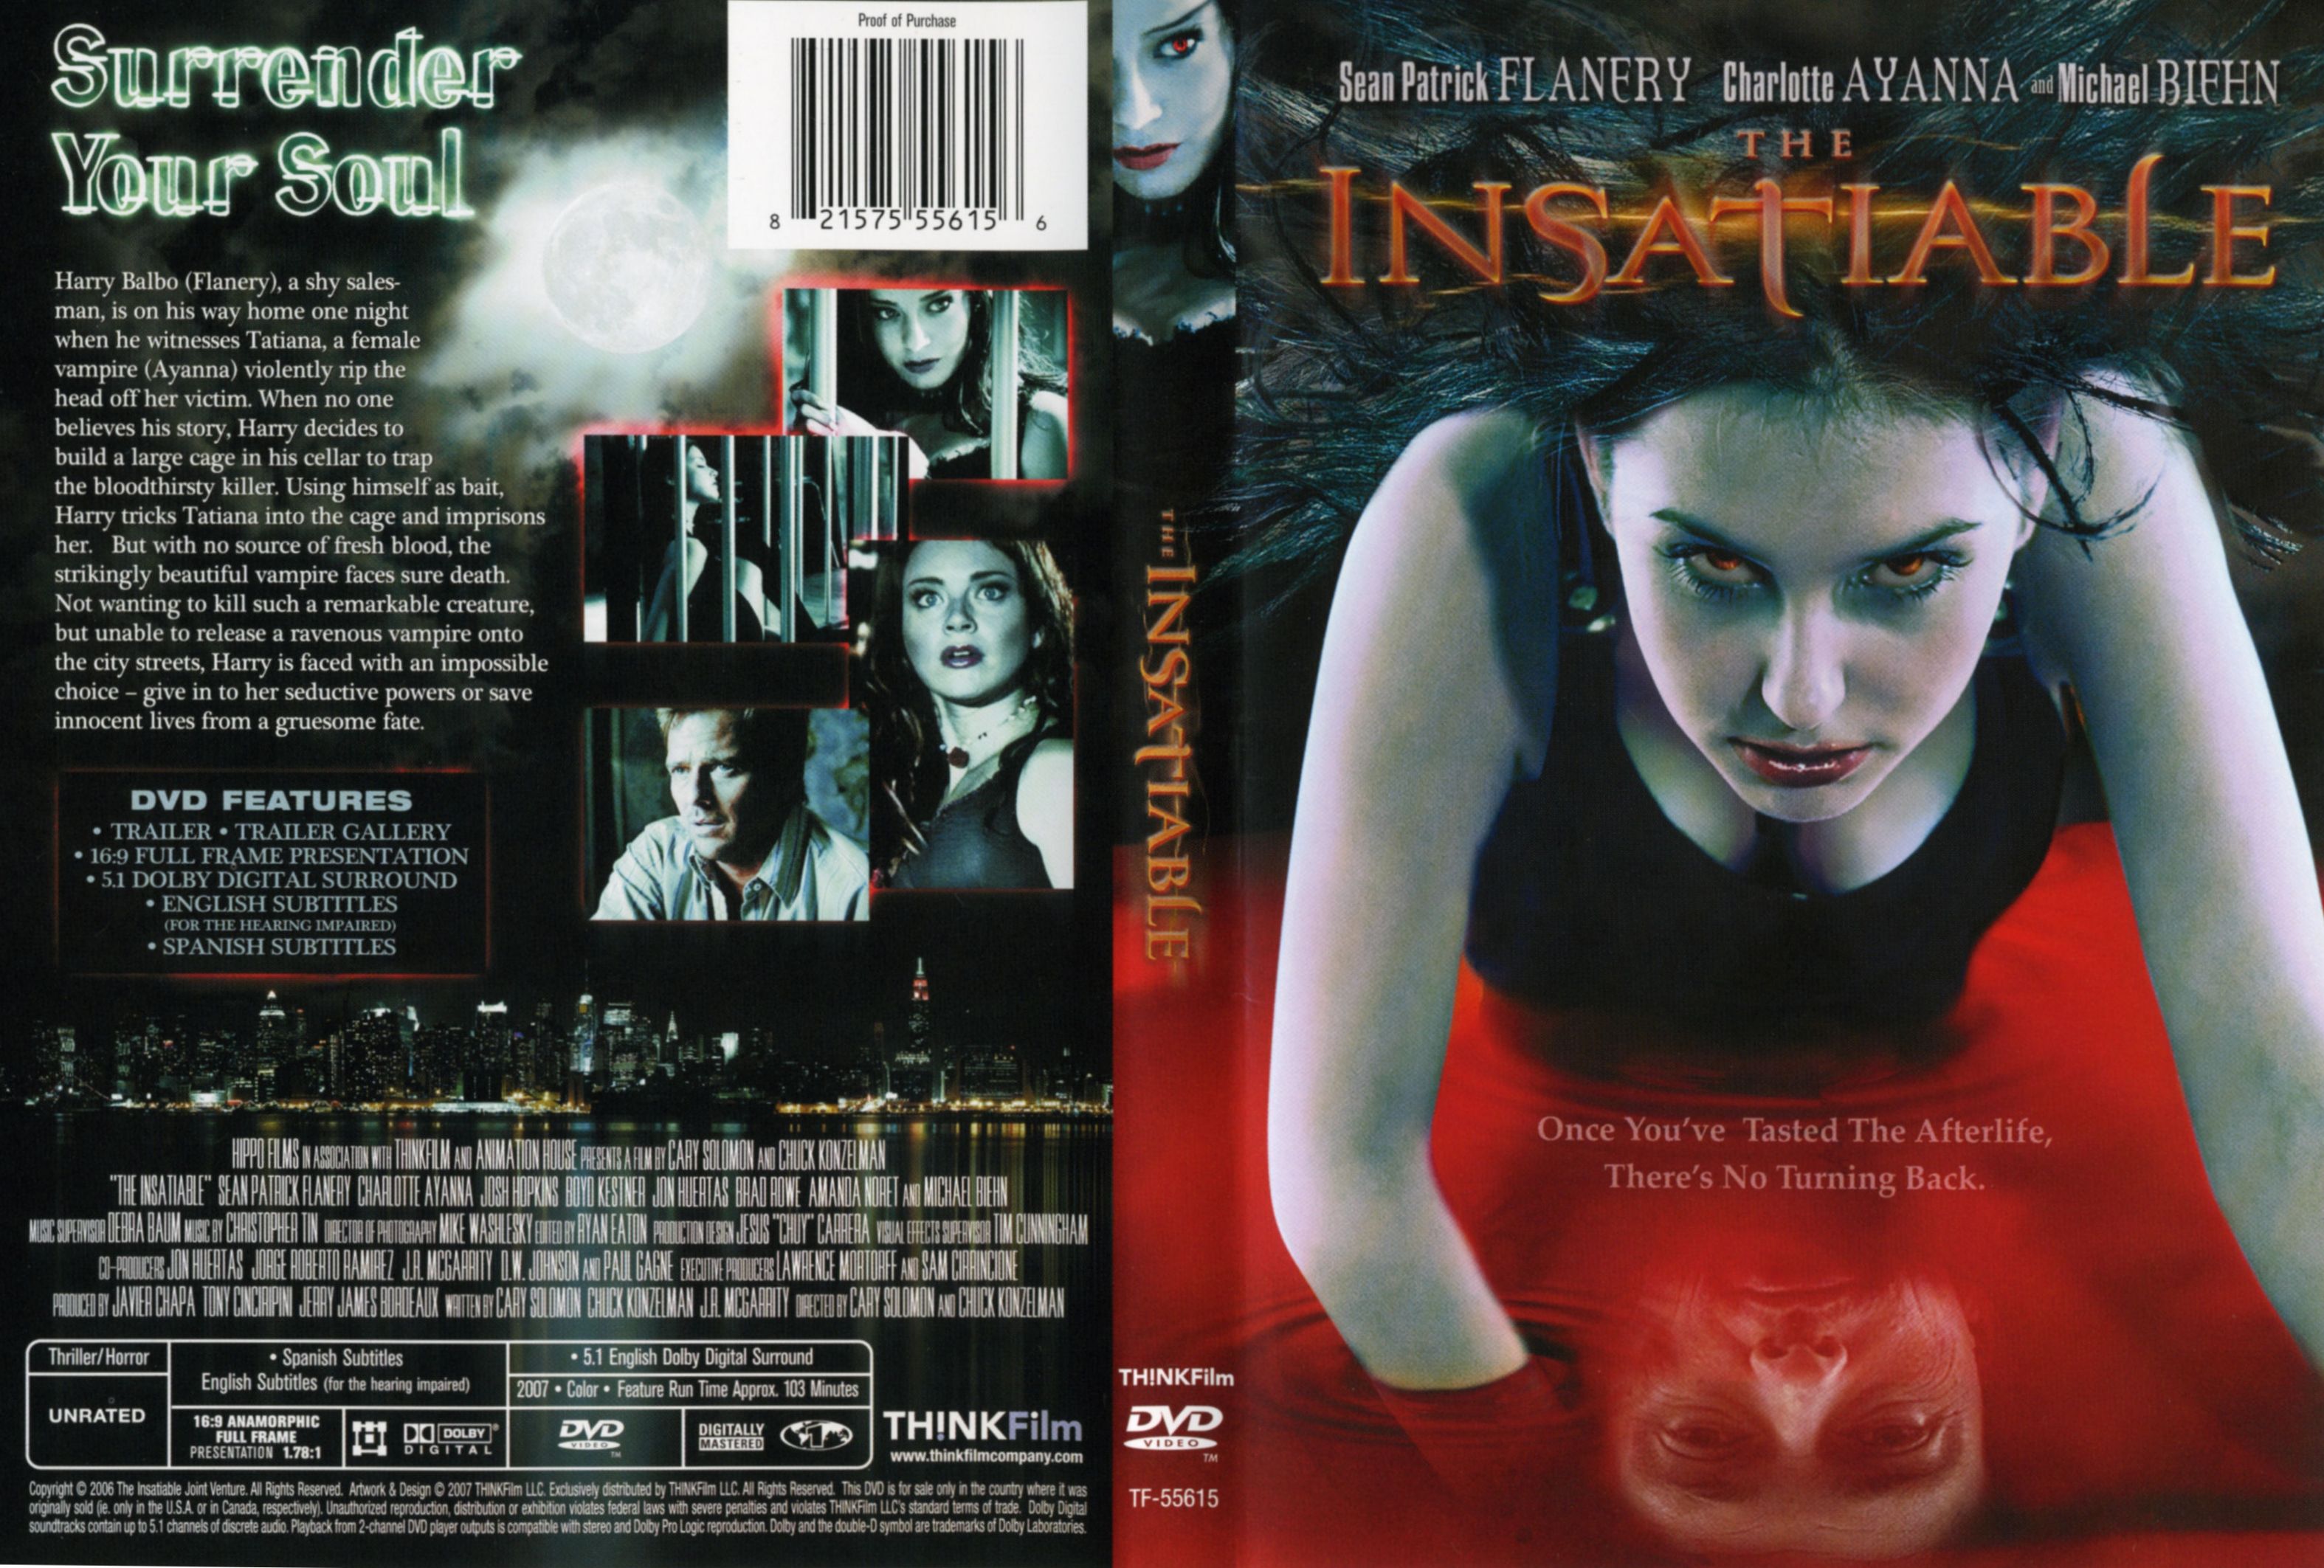 The Insatiable - Region 1 DVD Cover - FULL
Keywords: ;media_cover